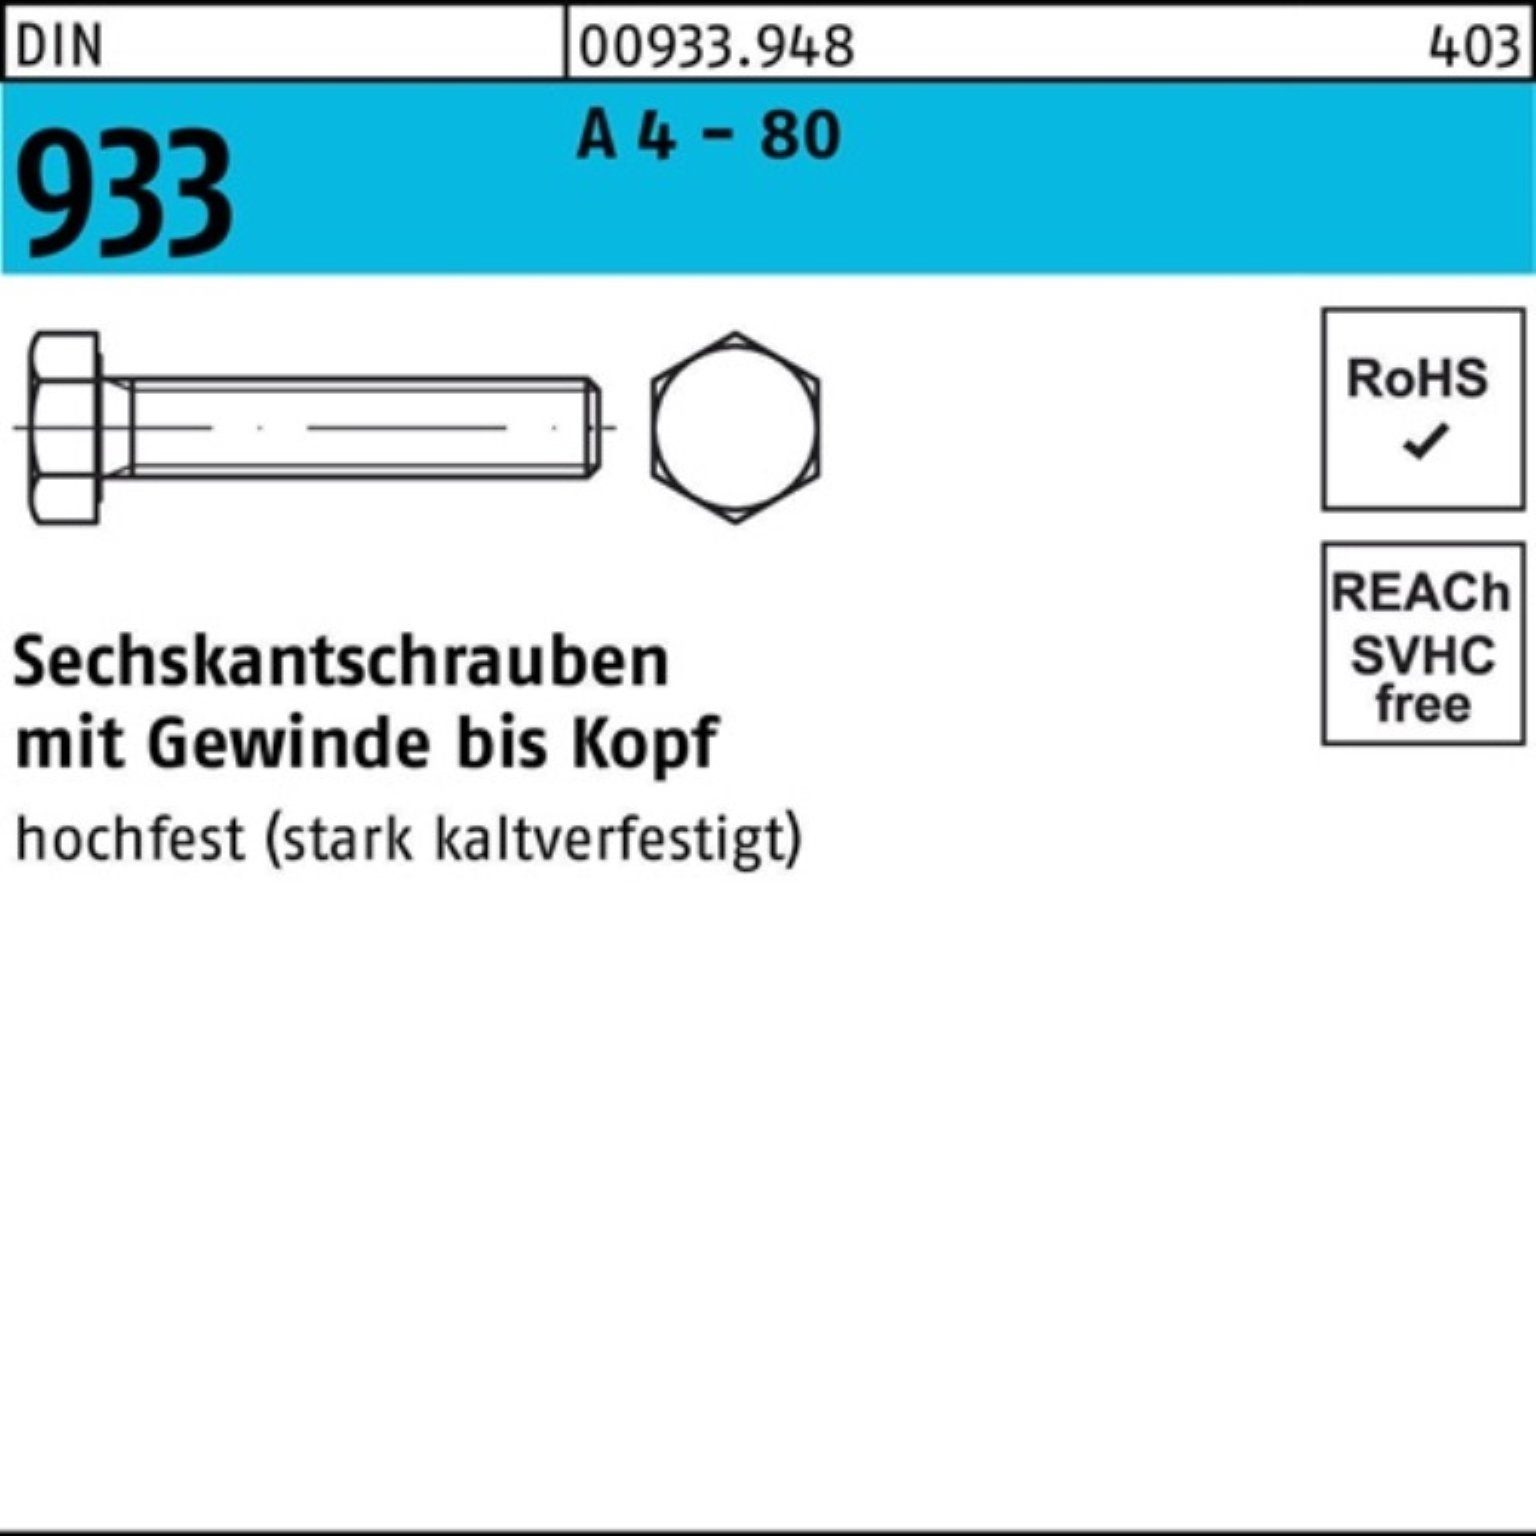 Reyher Sechskantschraube 100er Pack Sechskantschraube DIN 933 VG M8x 10 A 4 - 80 100 Stück DIN